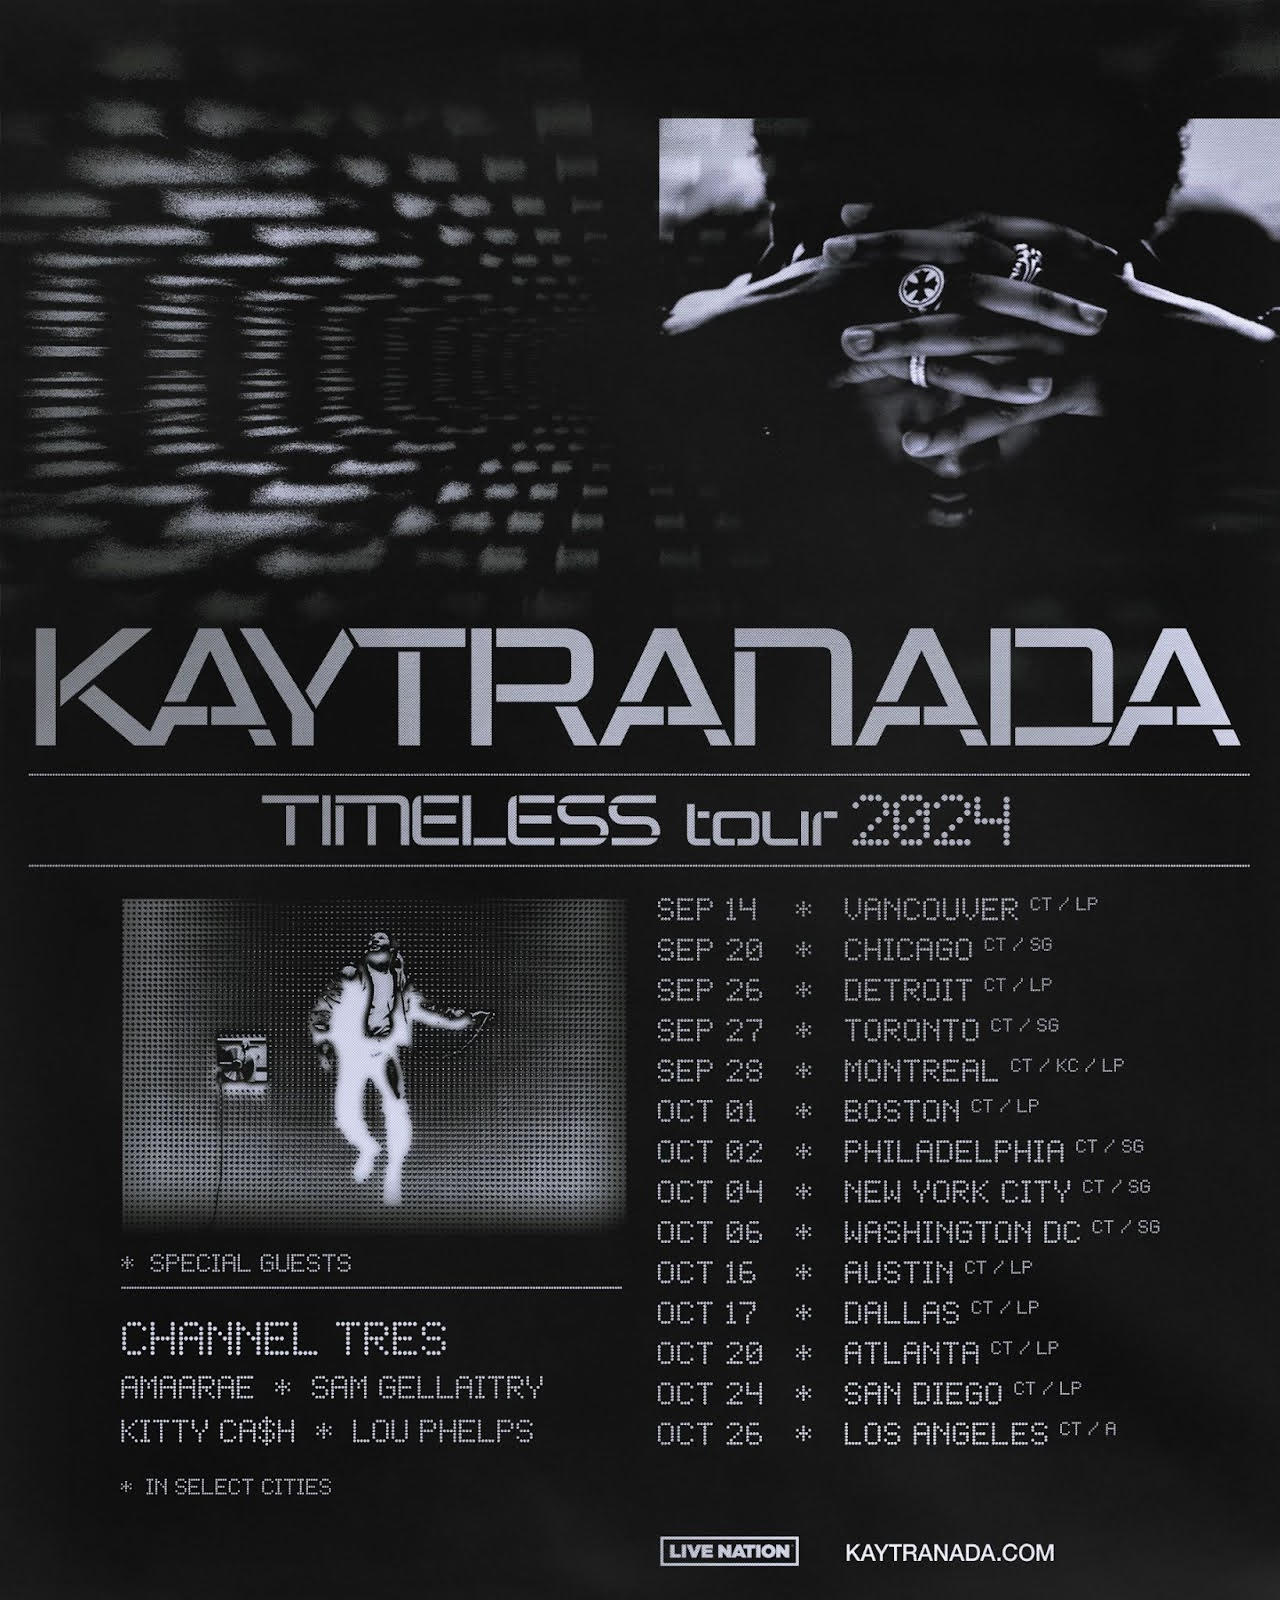 Kaytranda: Timeless tour at Huntington Bank Pavillion on Sept. 20